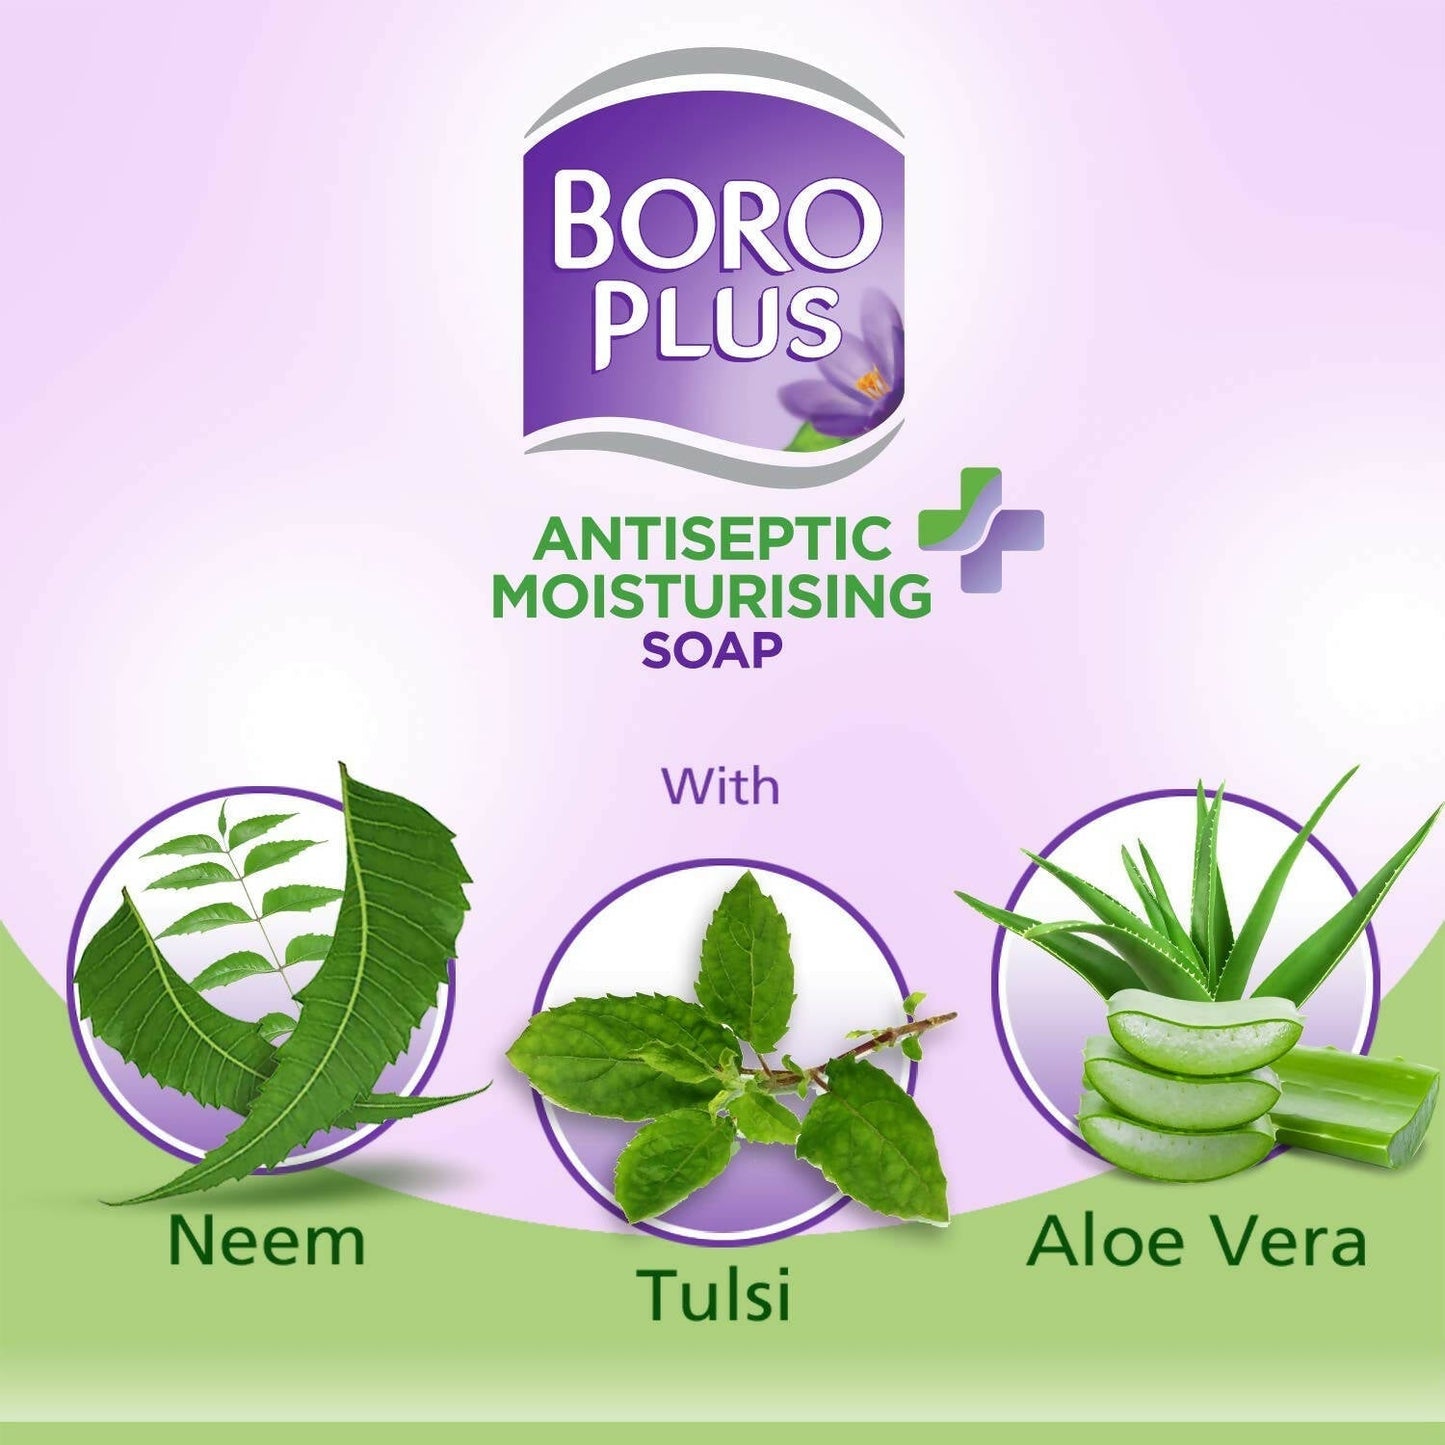 BoroPlus Antiseptic And Moisturising Bathing Soap With Aloe Vera, Neem And Tulsi